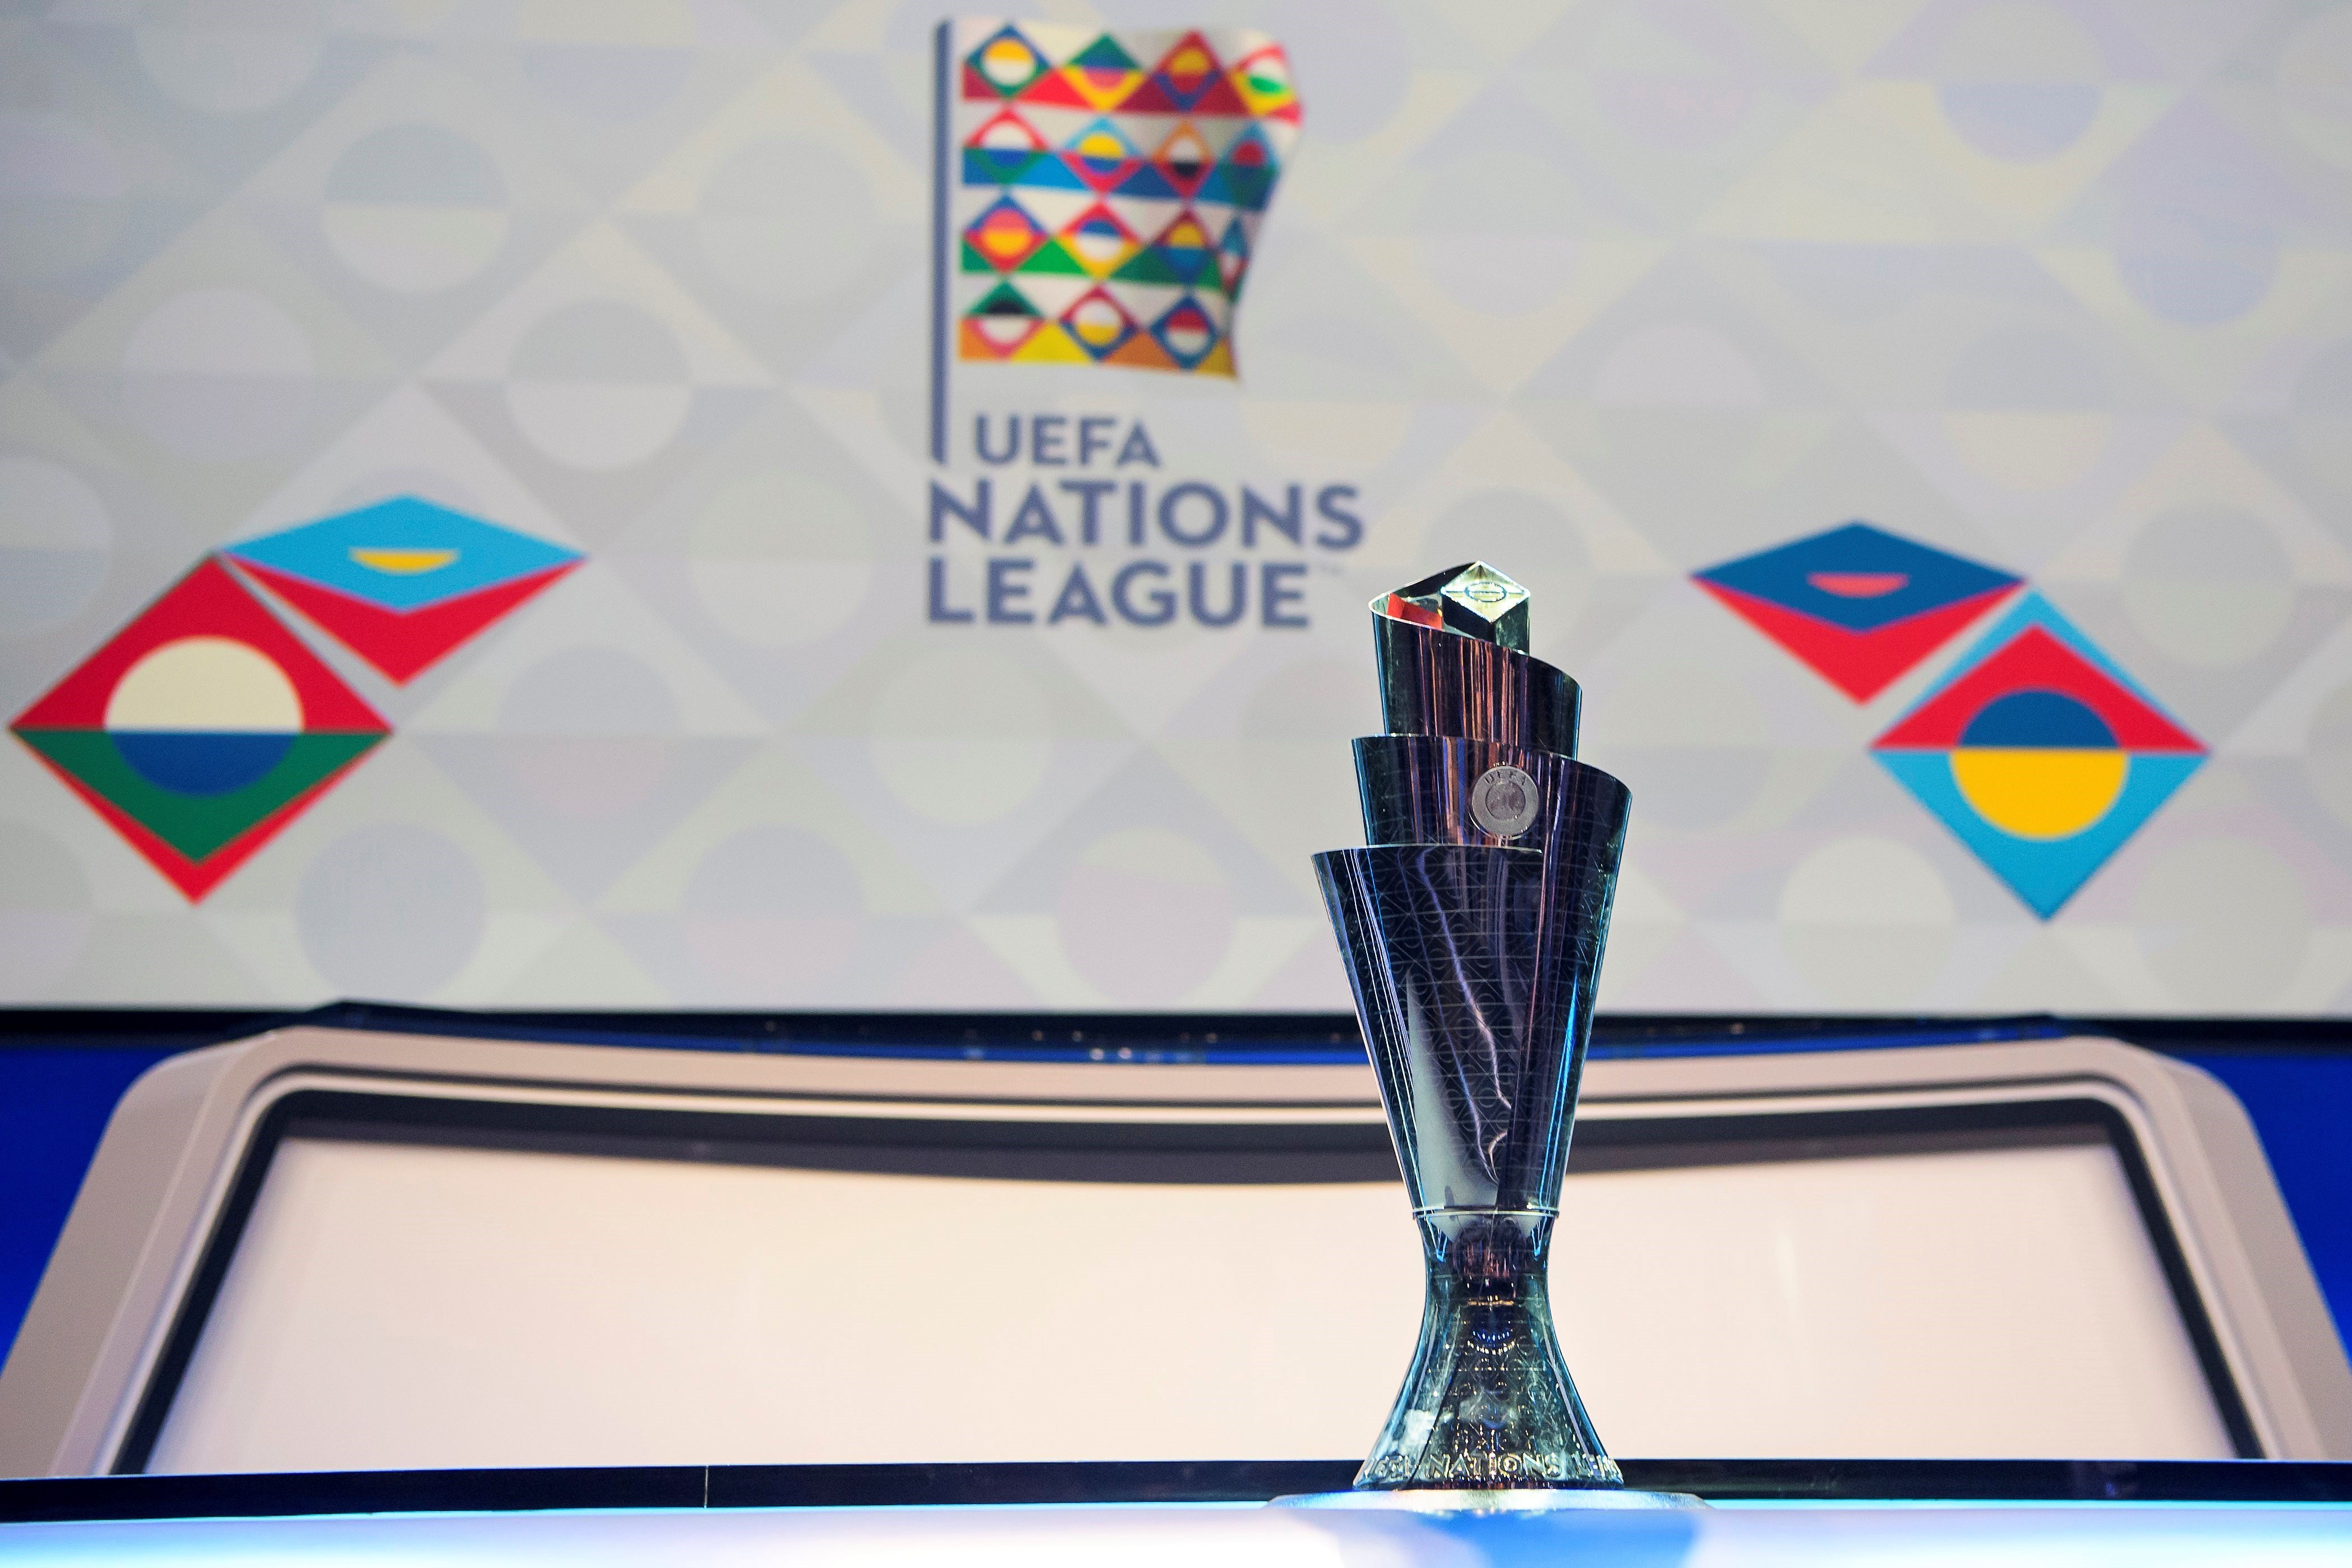 La UEFA estrena la Nations League